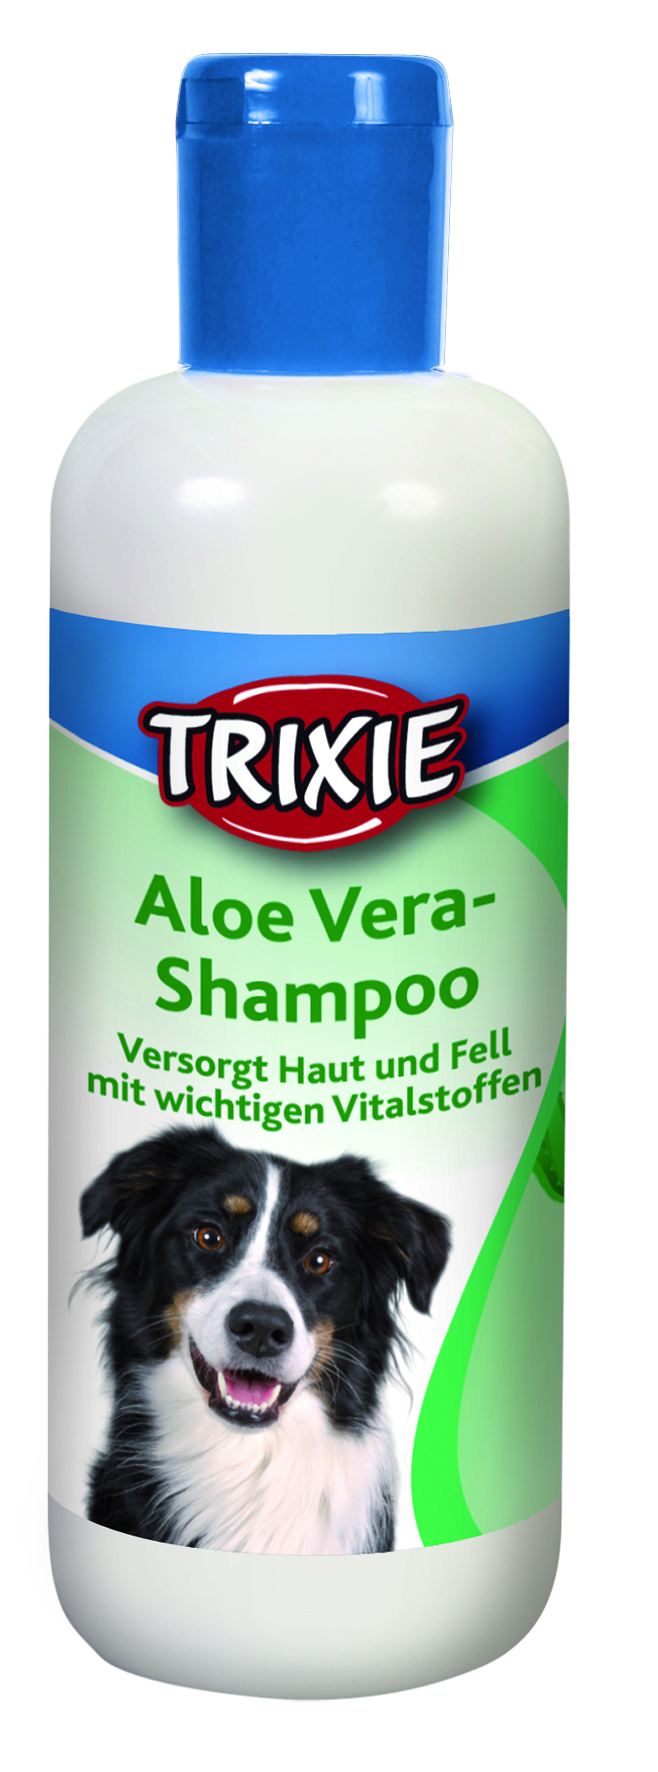 Aloe Vera-Shampoo, 250 ml